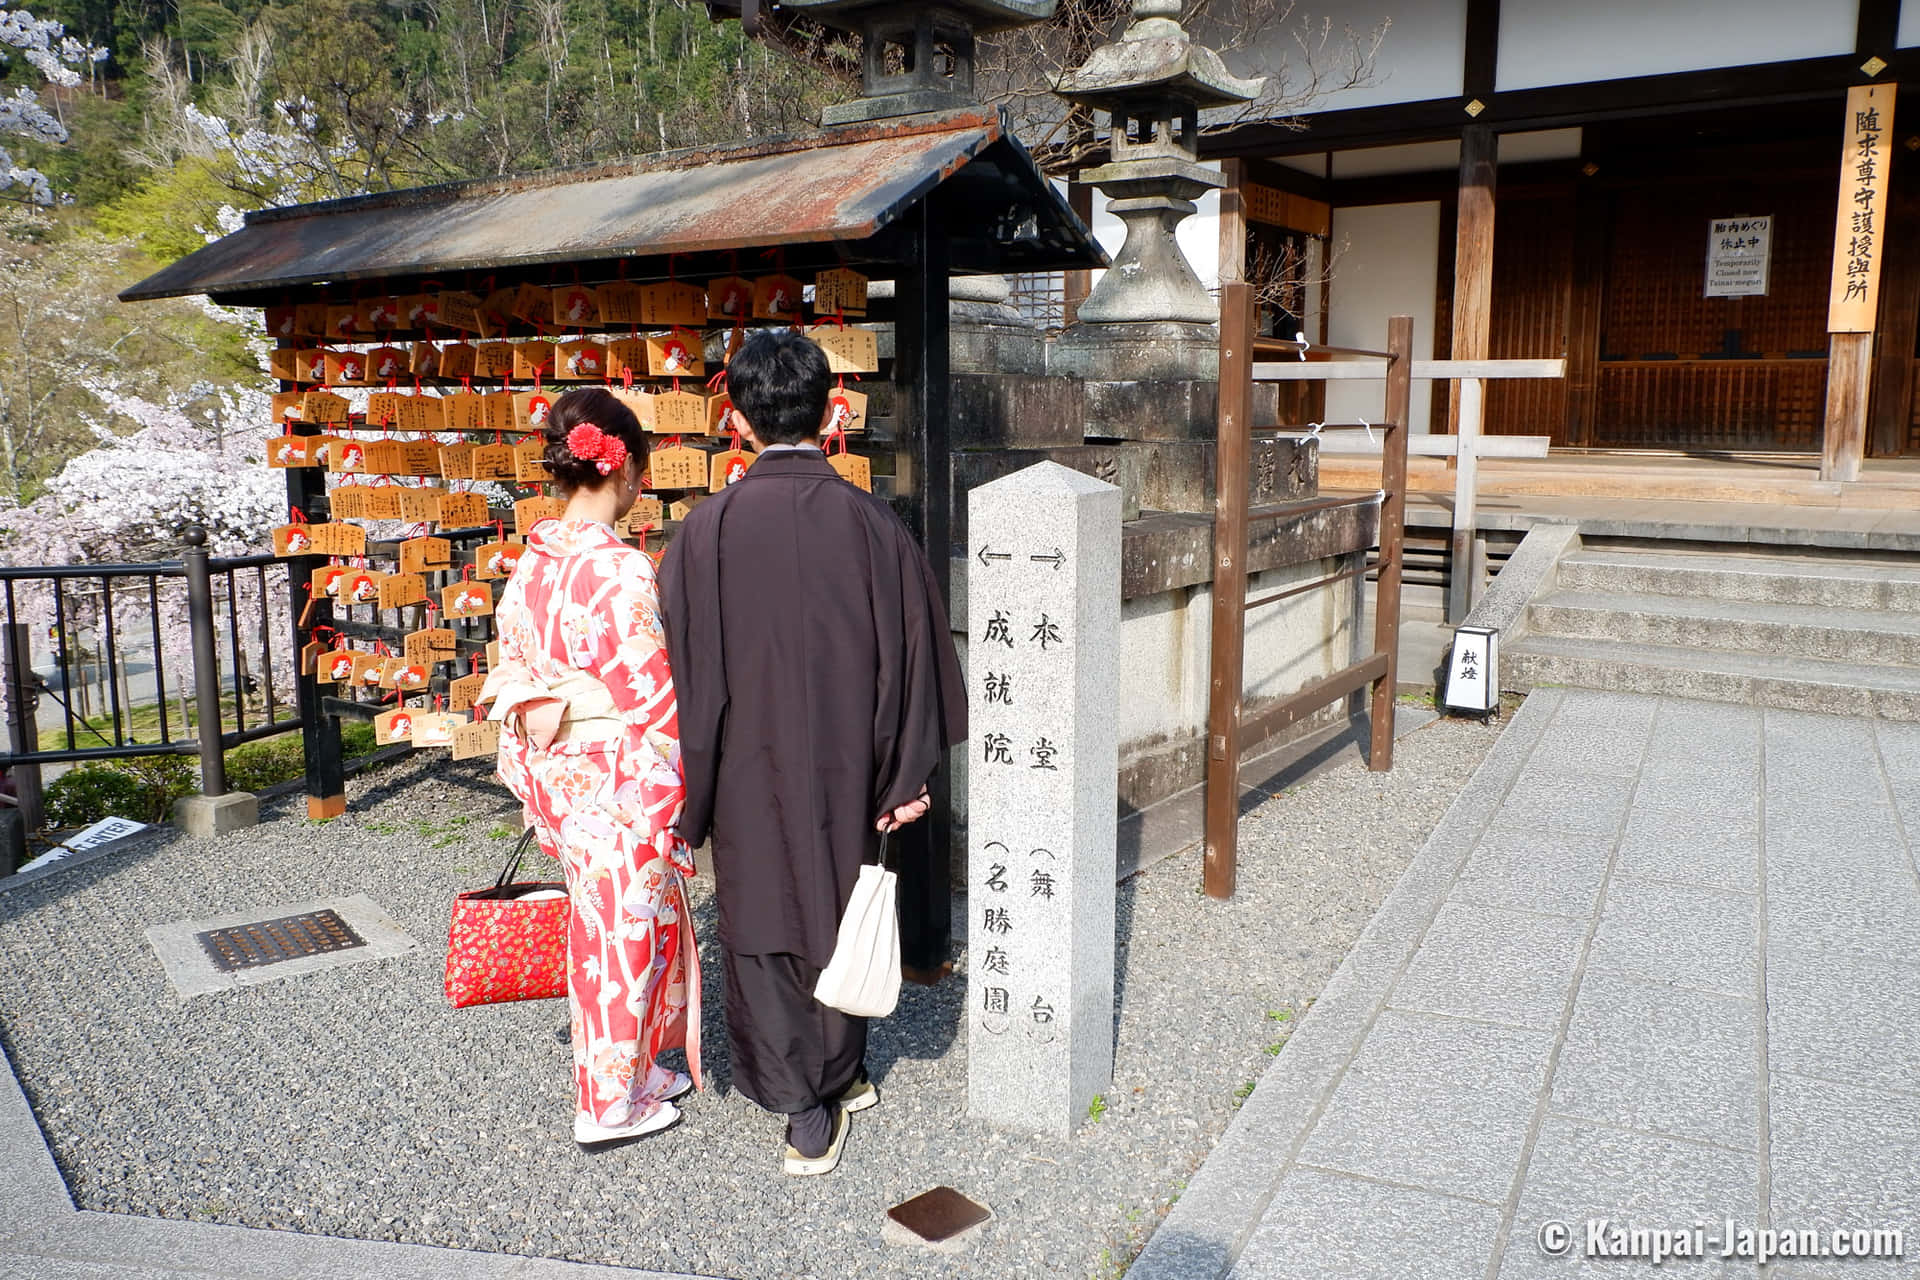 A Couple In A Kimono